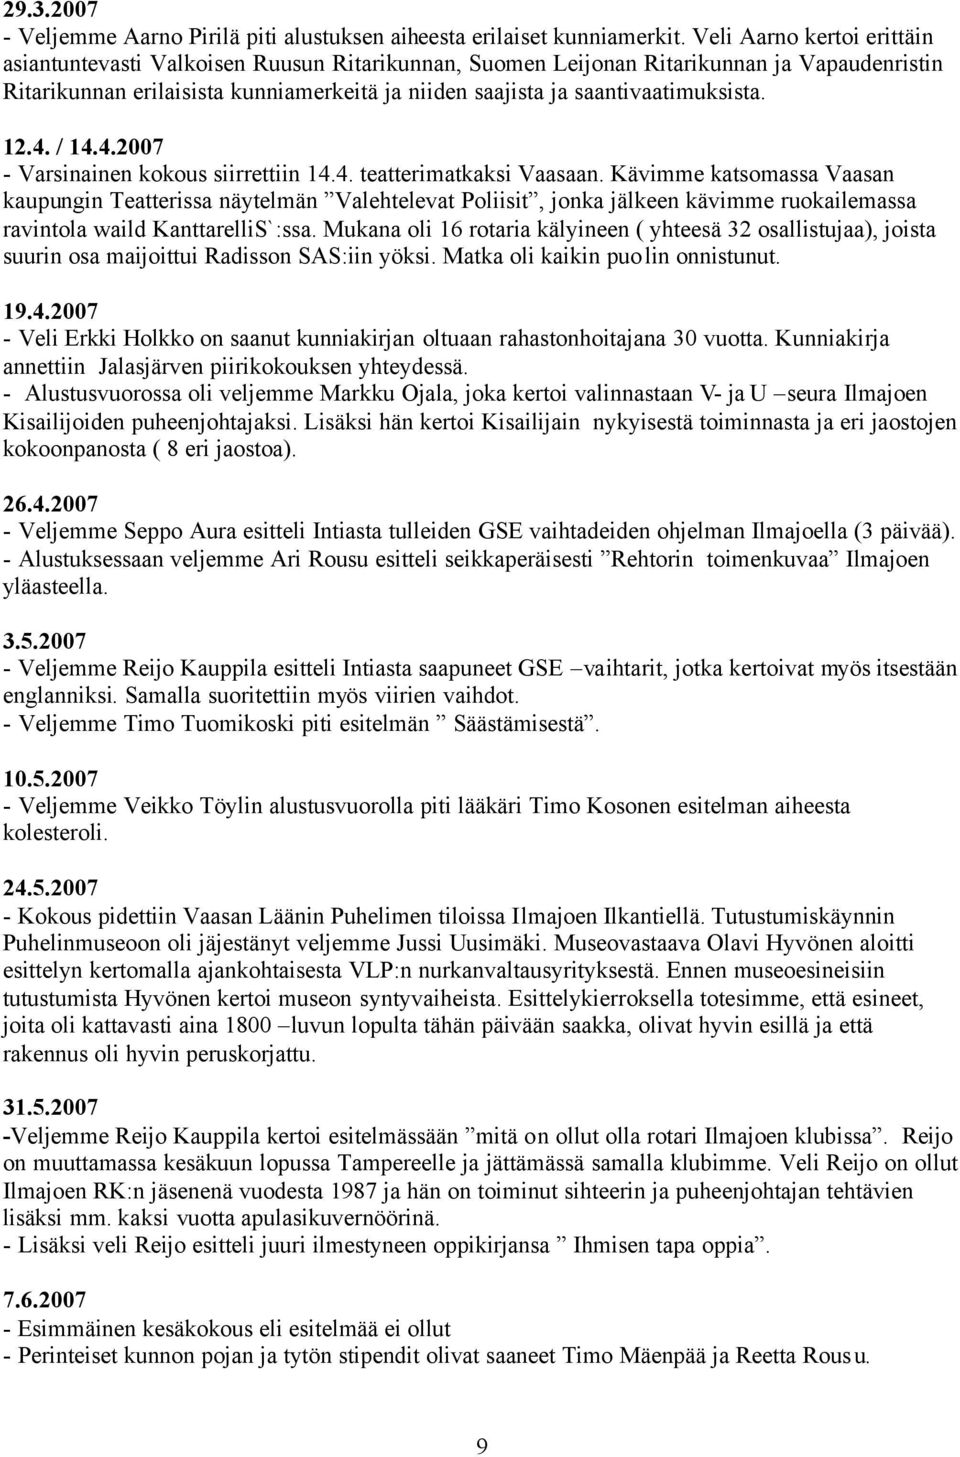 saantivaatimuksista. 12.4. / 14.4.2007 - Varsinainen kokous siirrettiin 14.4. teatterimatkaksi Vaasaan.